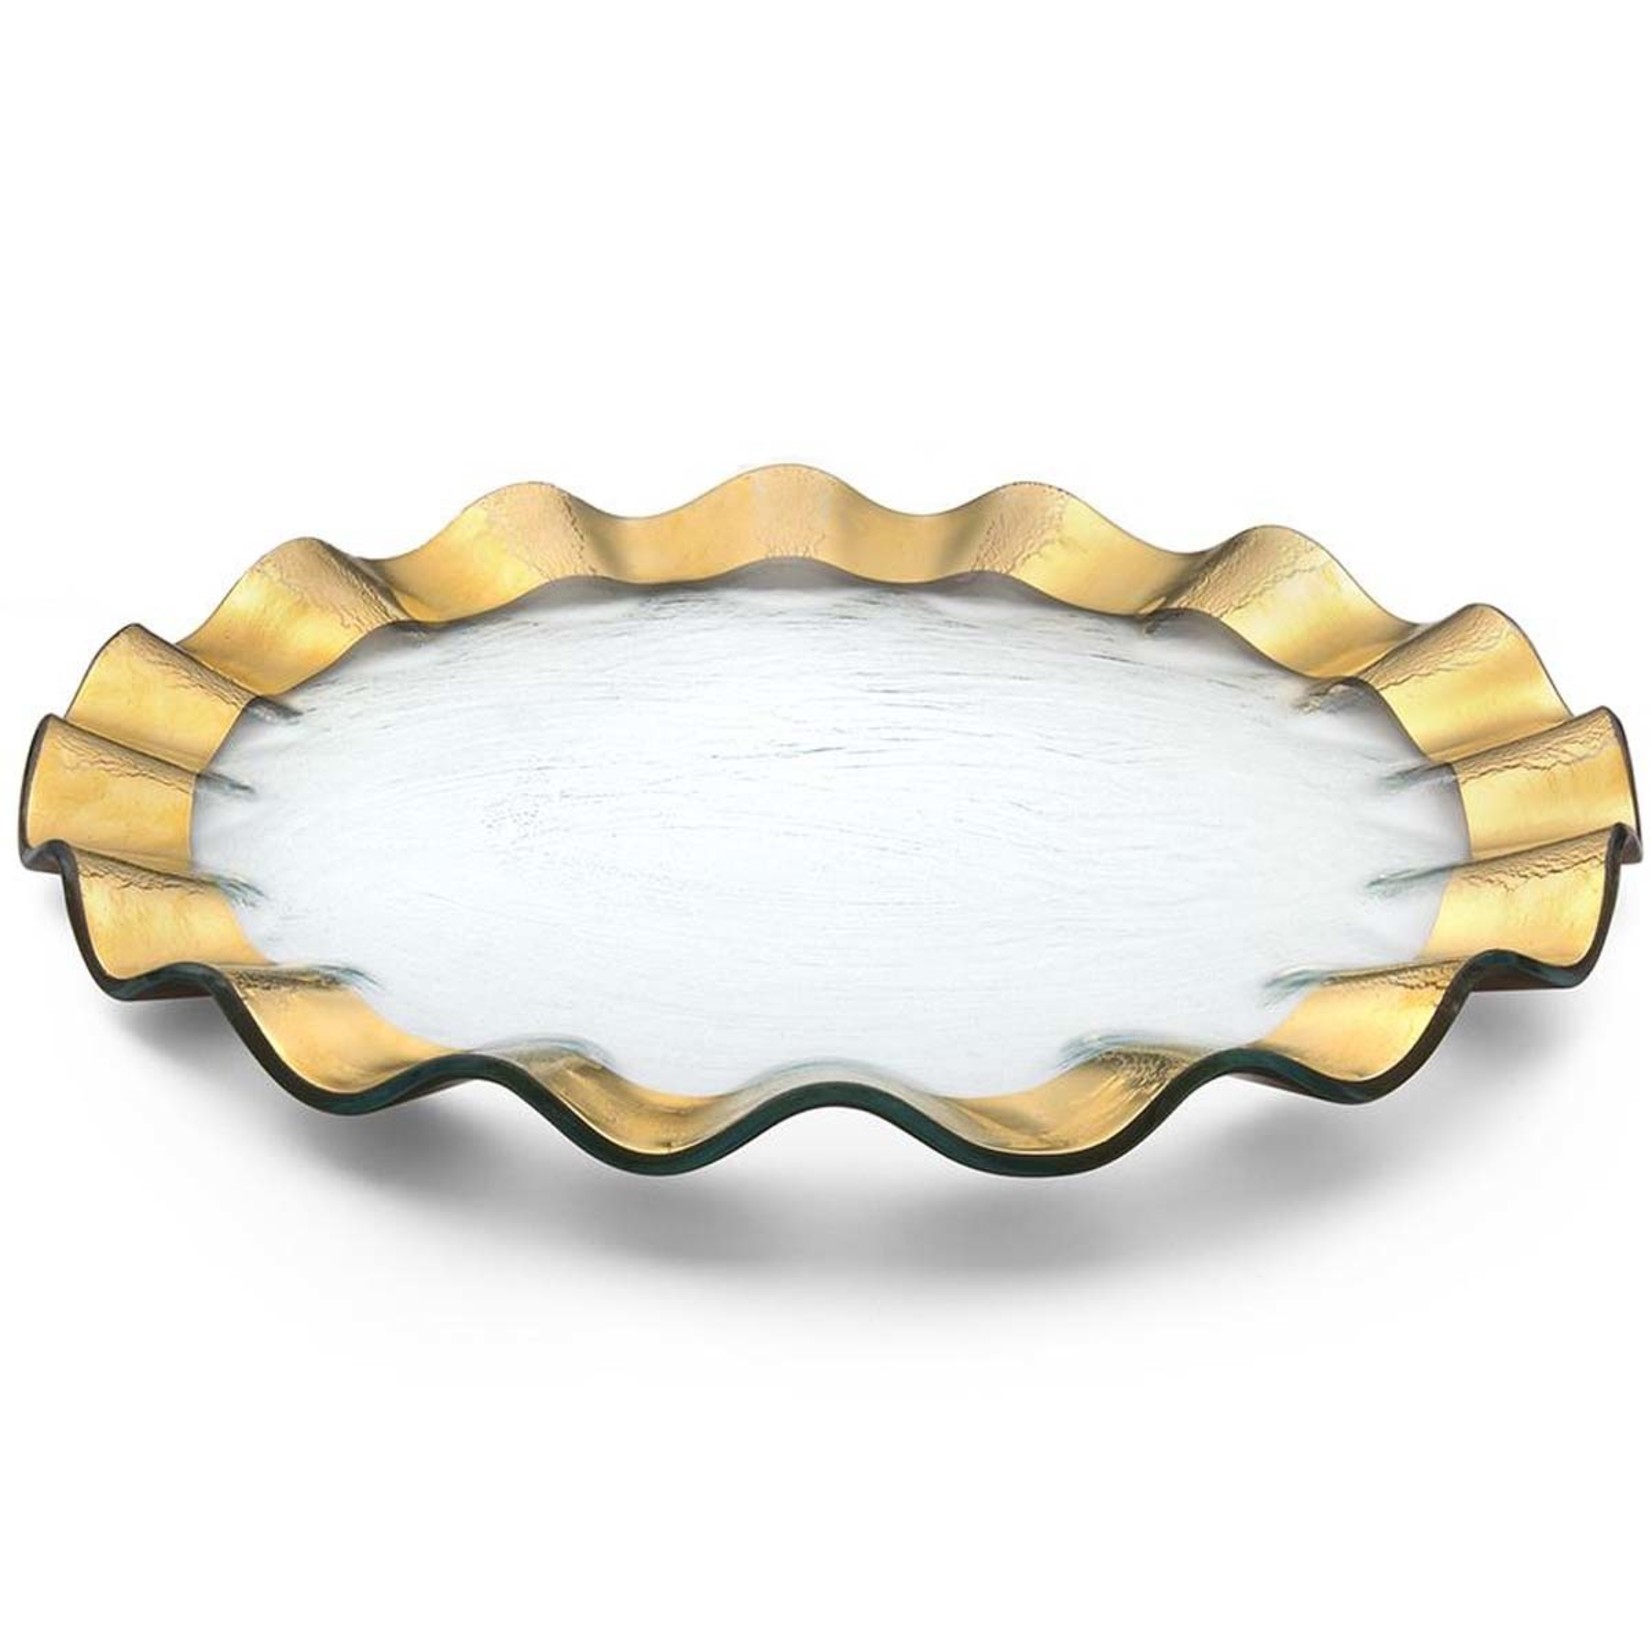 Annieglass Ruffle Buffet Plate (Charger), Gold, 13"